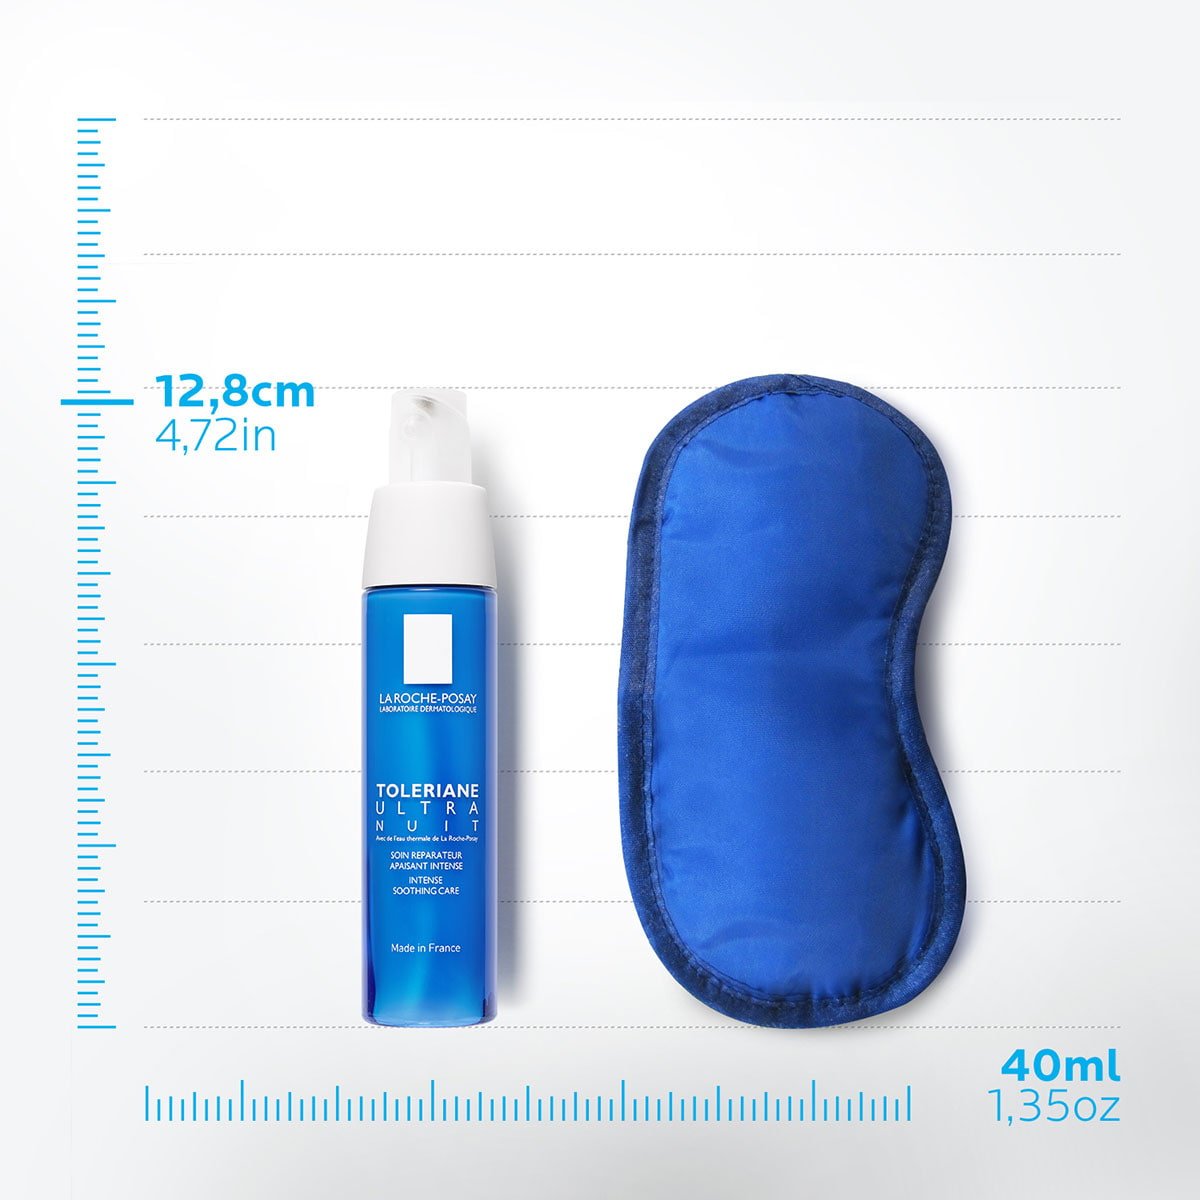 La Roche Posay ProduktSide Sensitiv Tendens til allergi Toleriane Ultra Nuit 40m